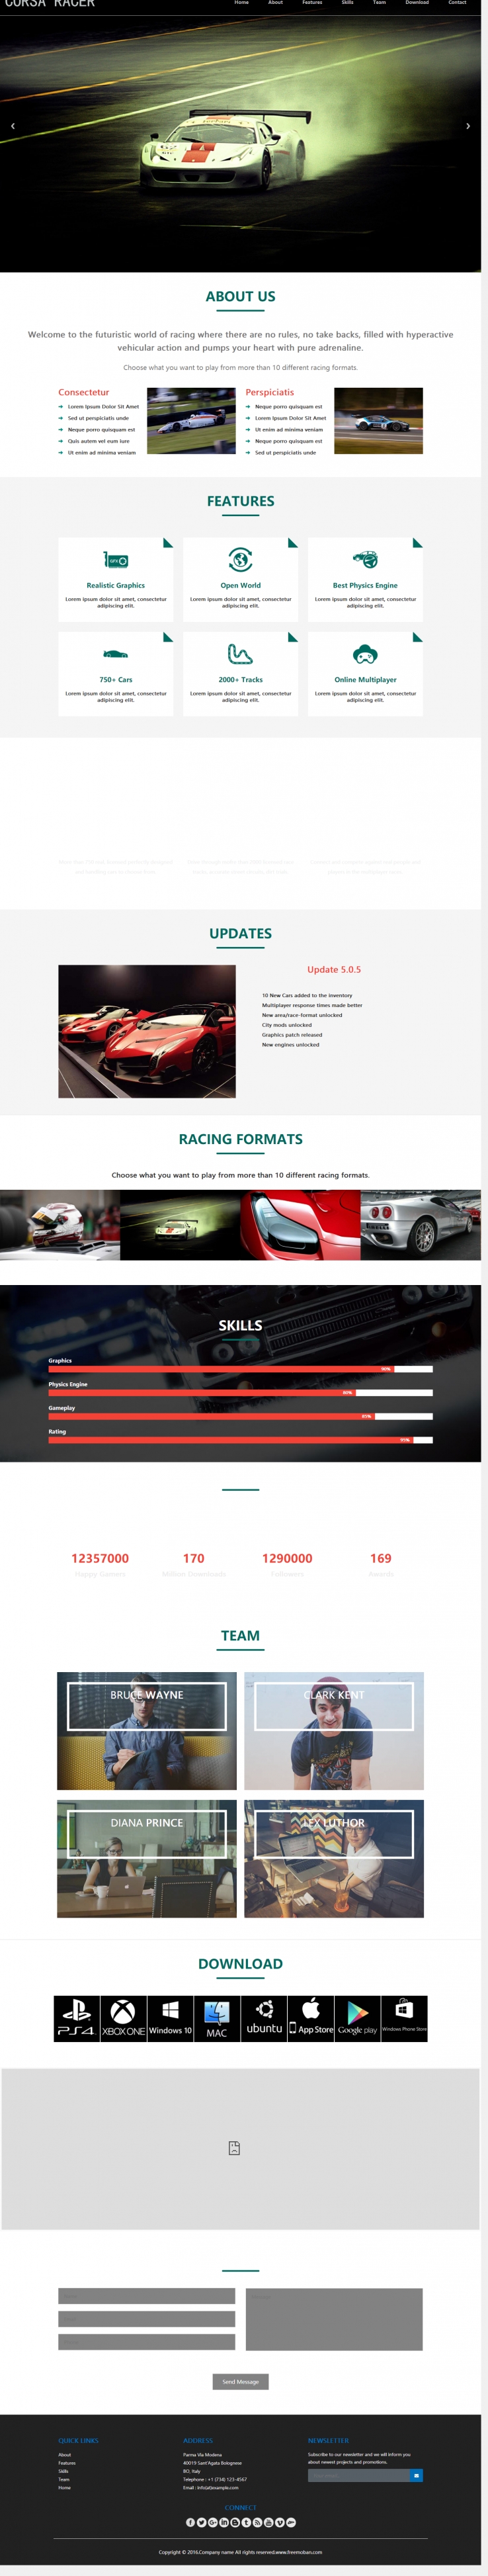 墨绿色炫酷风格的赛车方程式网站模板下载